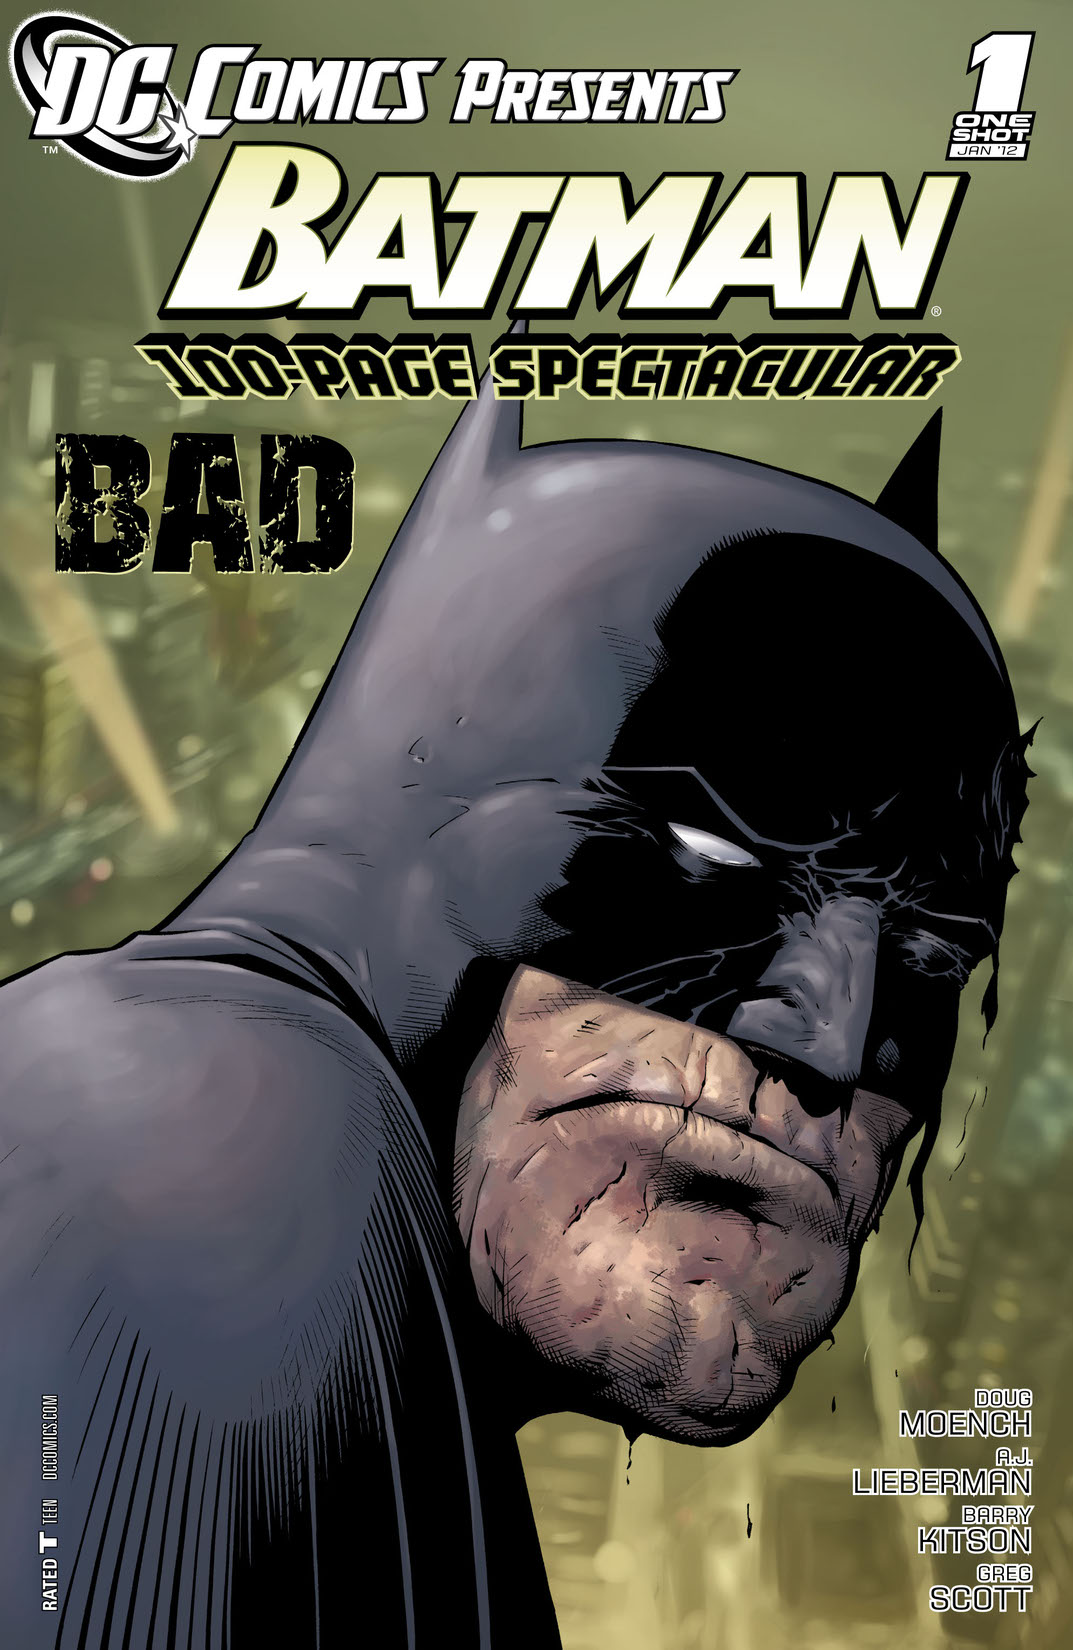 DC Comics Presents: Batman - Bad (2011-) #1 preview images